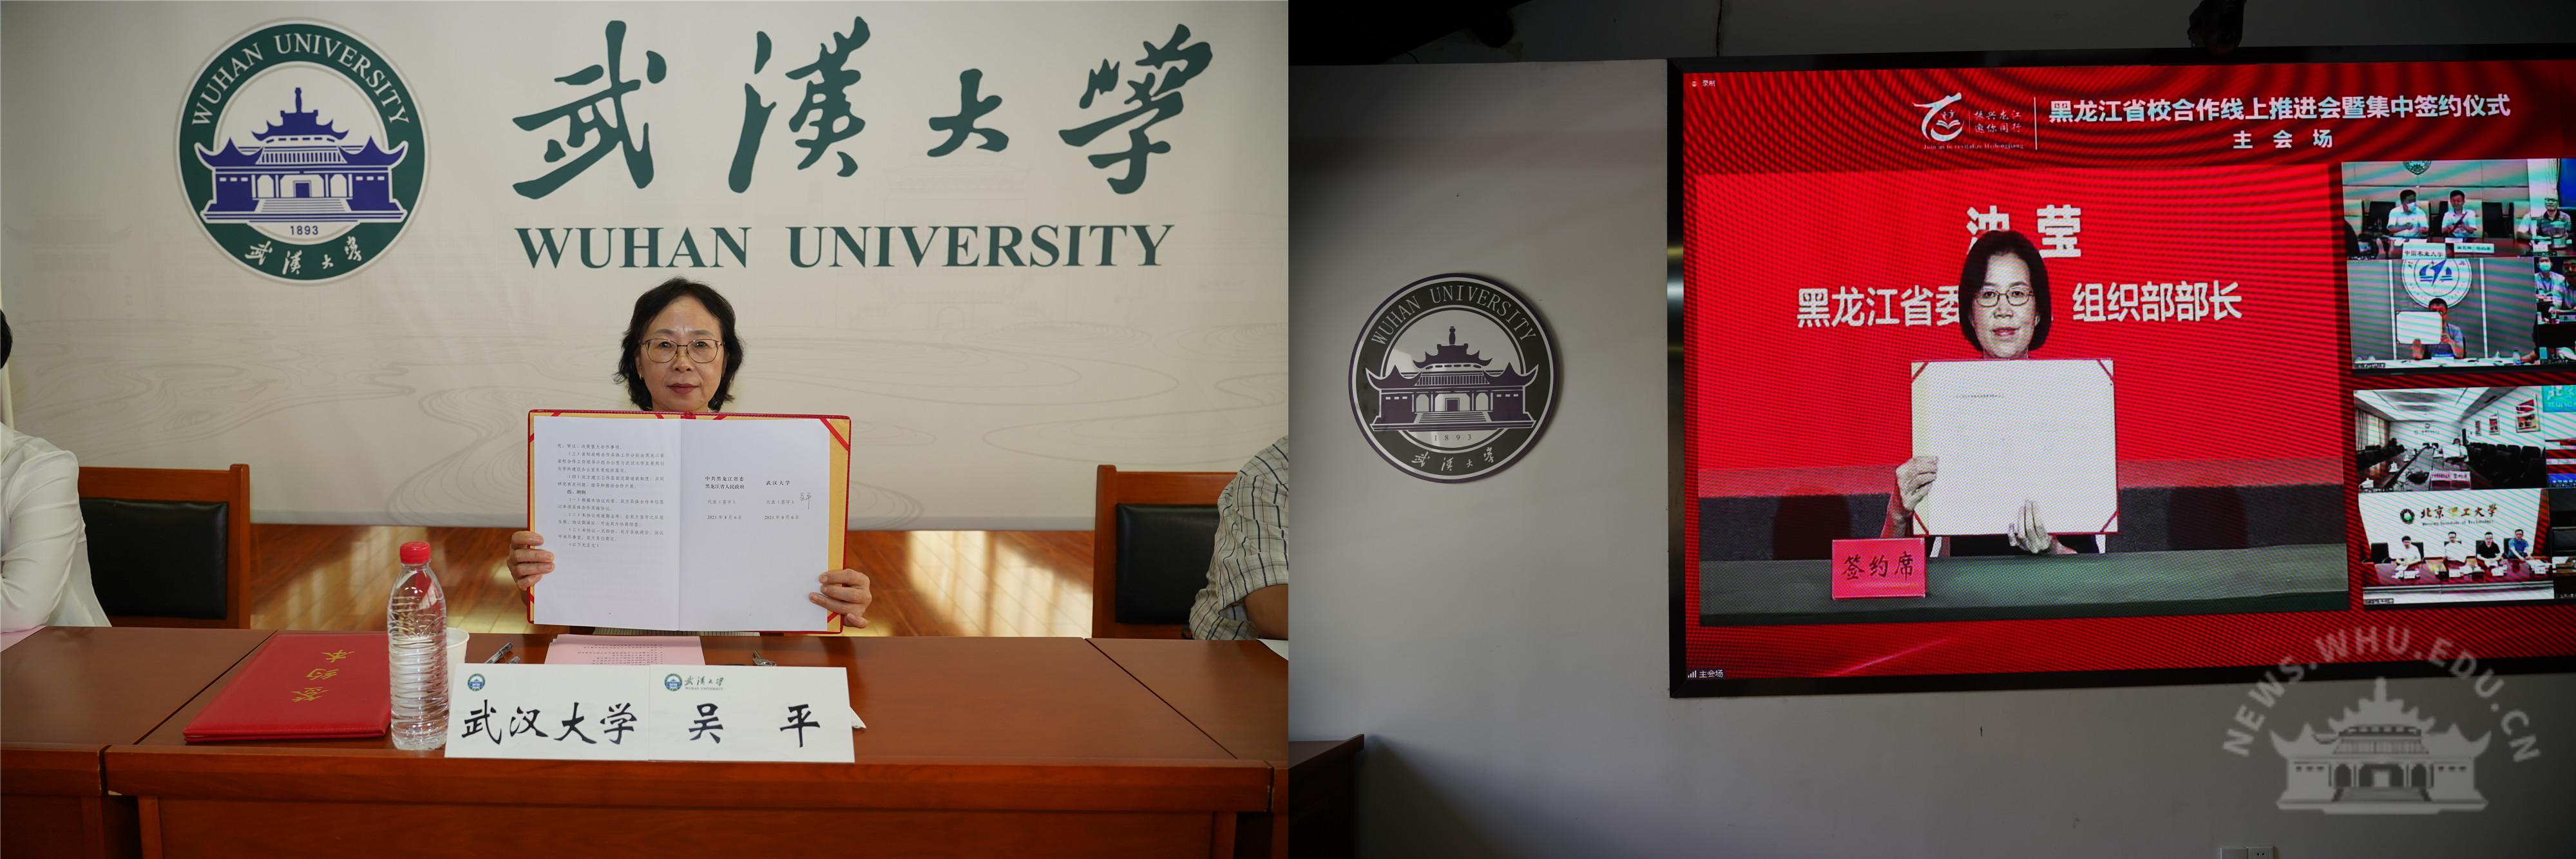 武汉大学干部培训——武汉大学与黑龙江省线上签署战略合作协议(图3)